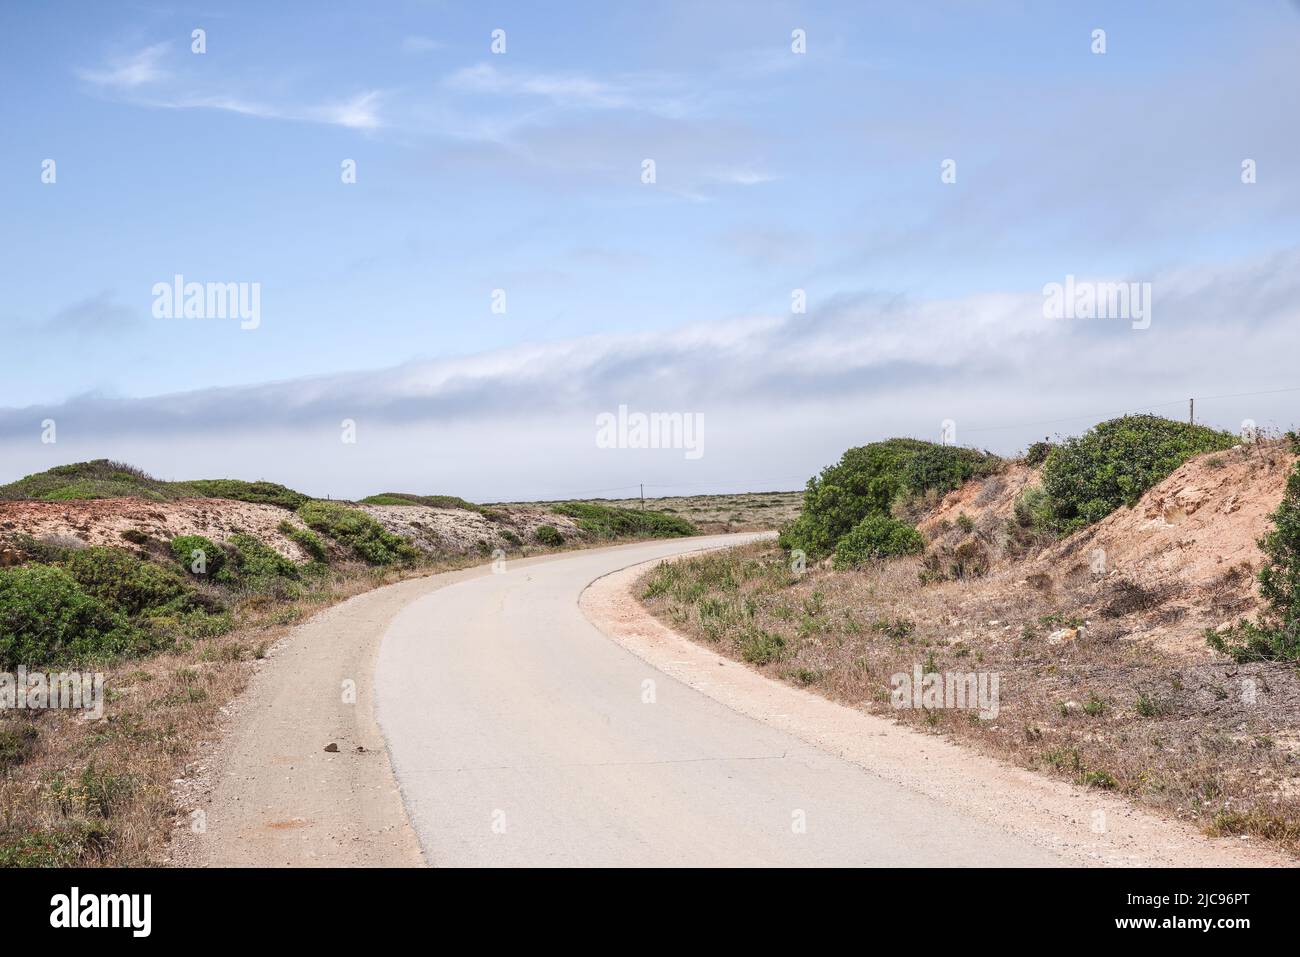 Carretera rural en Algarve que se extiende hasta la distancia (Portugal) Foto de stock